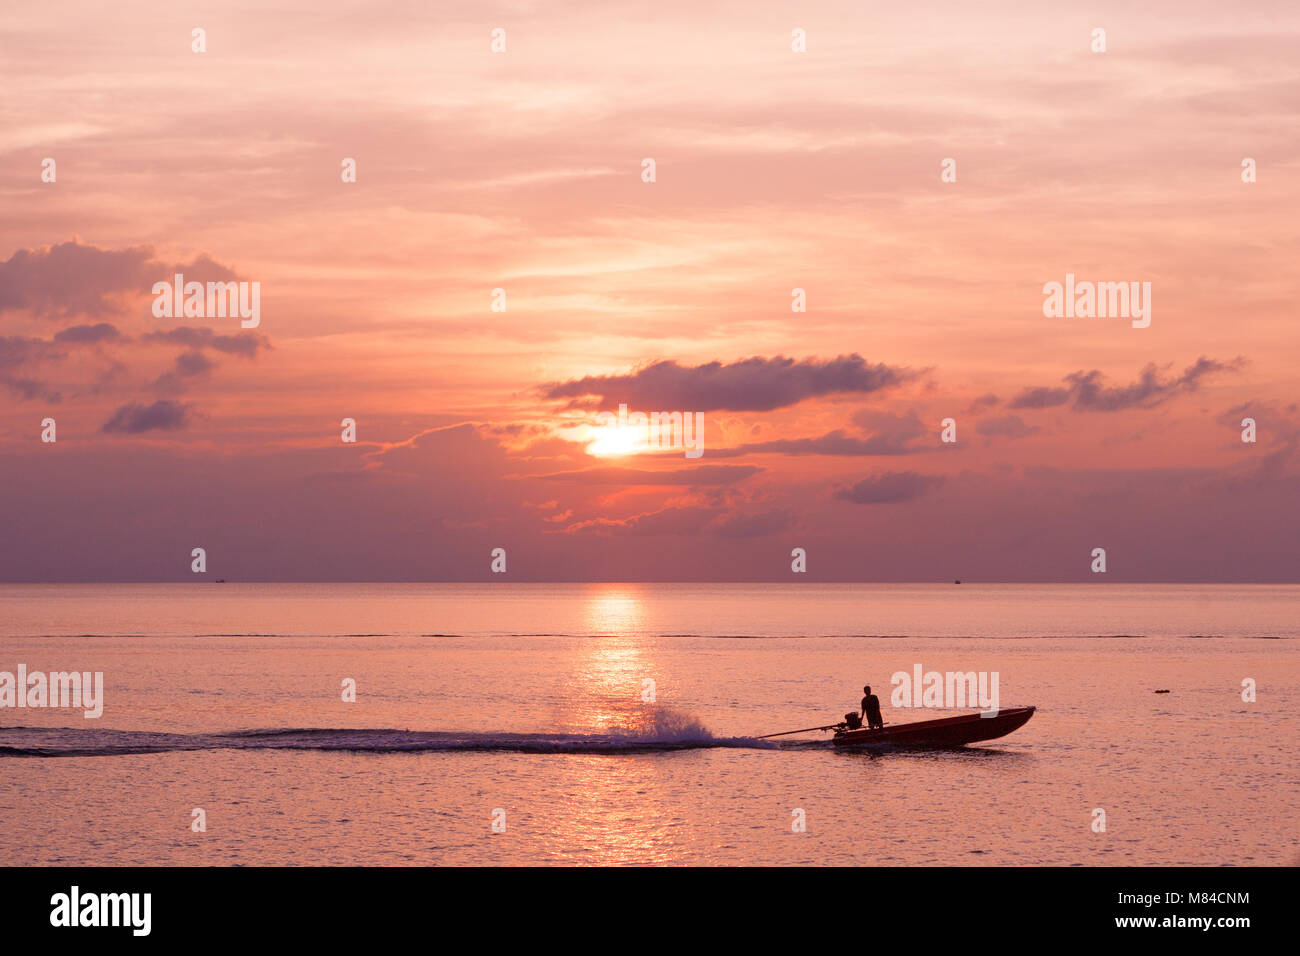 Silhouette der Mann auf einem Boot, hinterlassen eine Spur in das Meer unter einem Rosa bewölkter Sonnenuntergang Stockfoto